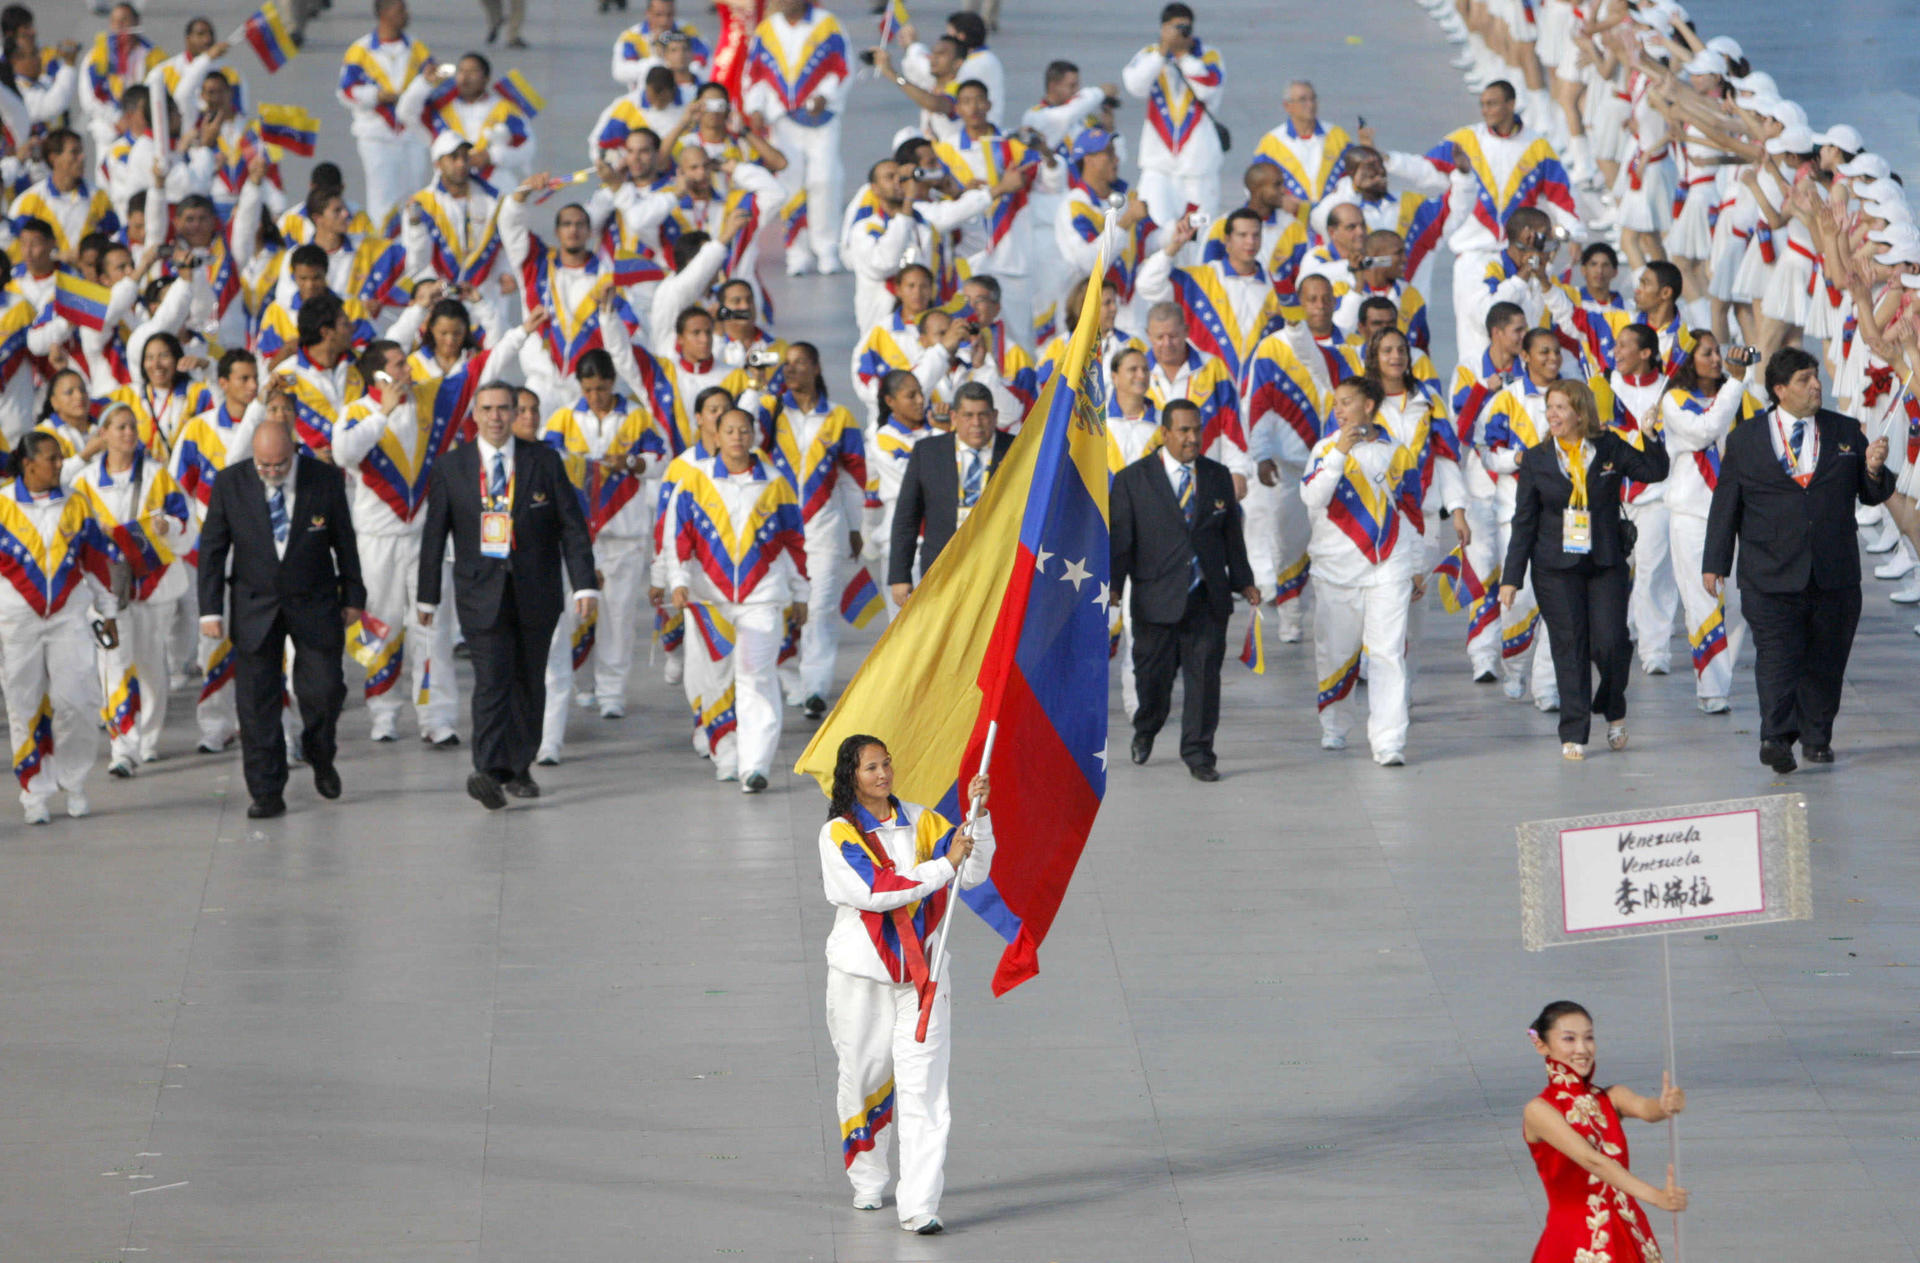 Foto de archivo de la delegación de Venezuela durante el desfile de inauguración de los Juegos Olímpicos de Pekín 2008. La reducción gradual de los recursos económicos para la preparación de los deportistas viene afectando el desempeño en este certamen. EFE/Lavandeira